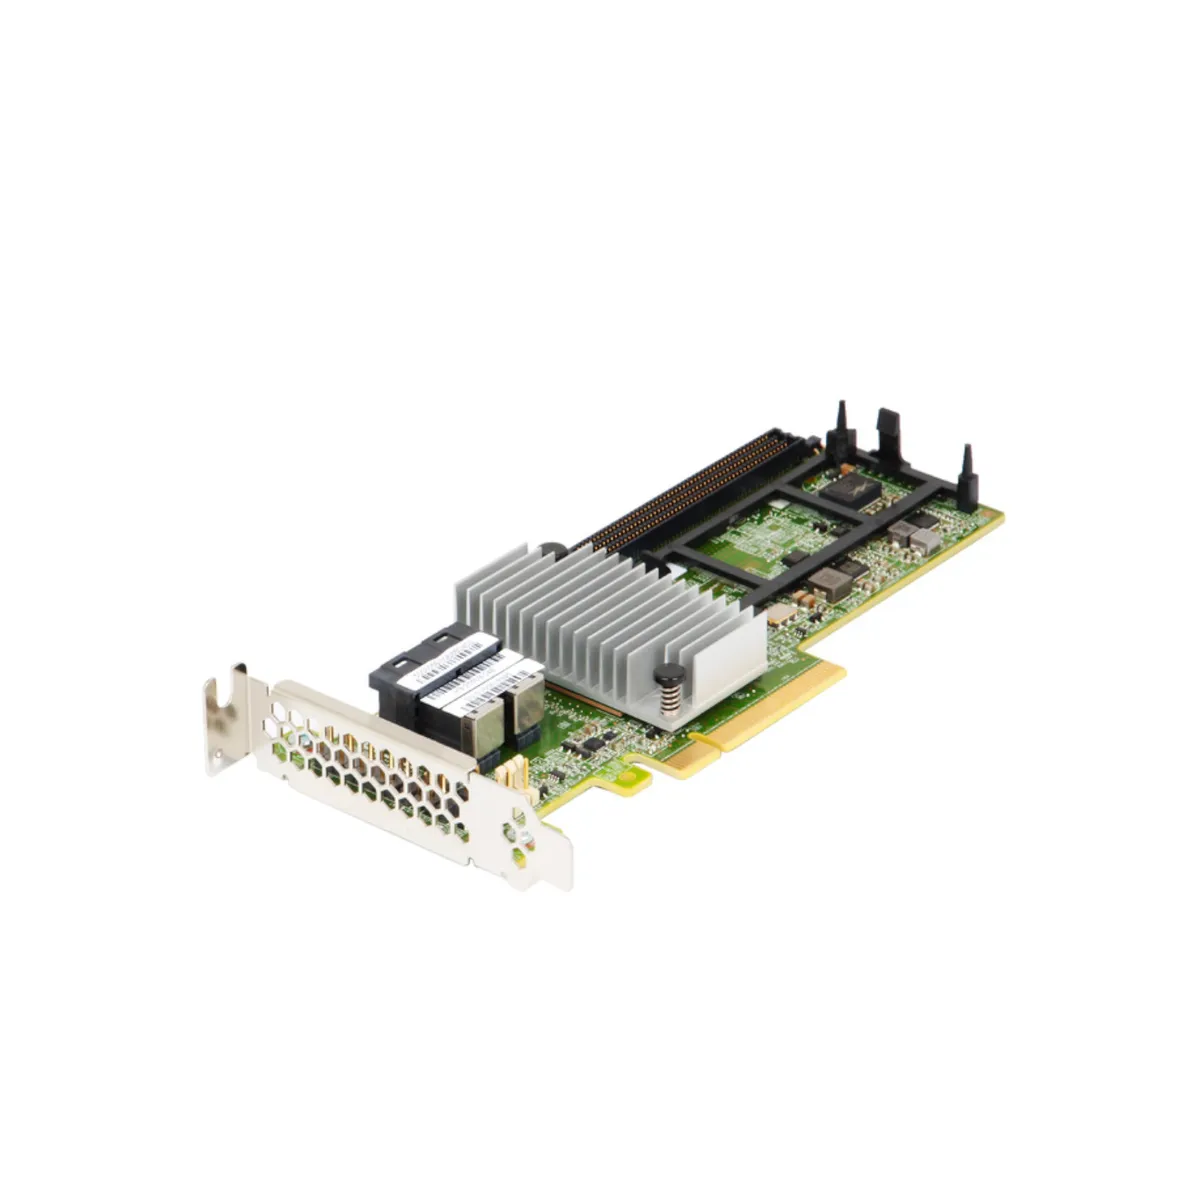 IBM ServeRAID M5210 2GB 12G - Low Profile PCIe-x8 RAID Controller